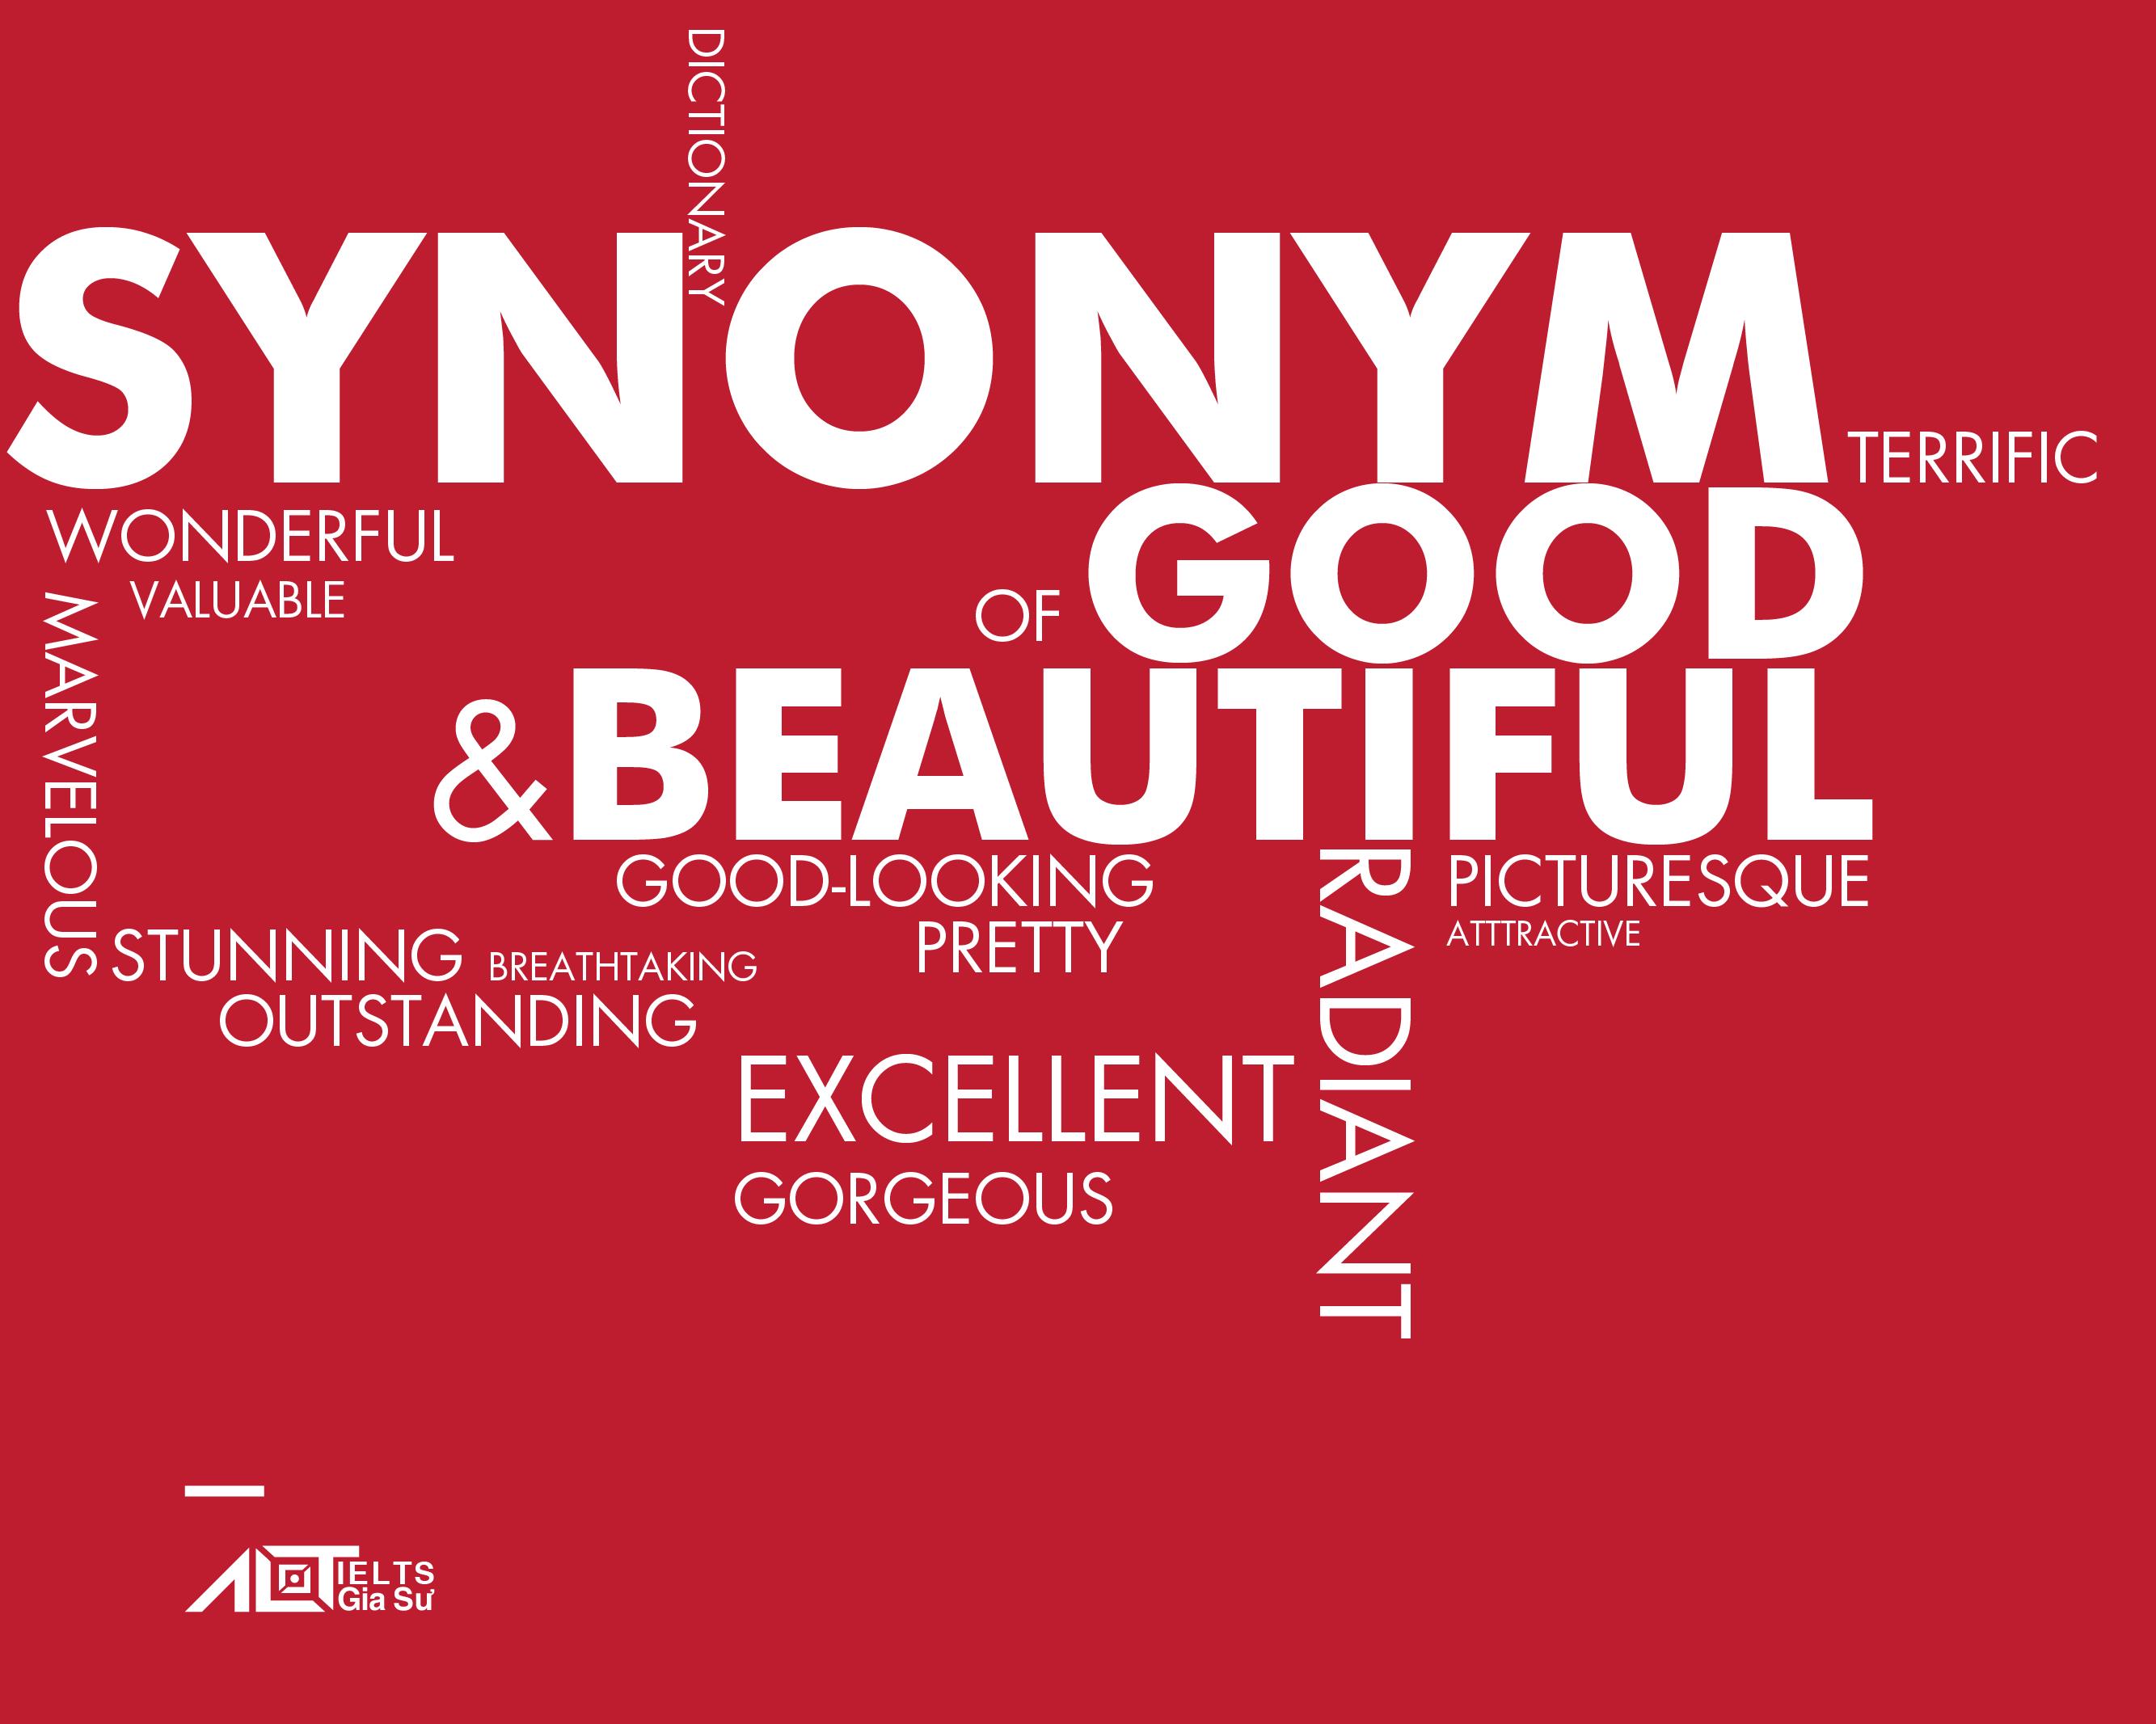 Synonym Dictionary: Synonym of Good - Beautiful